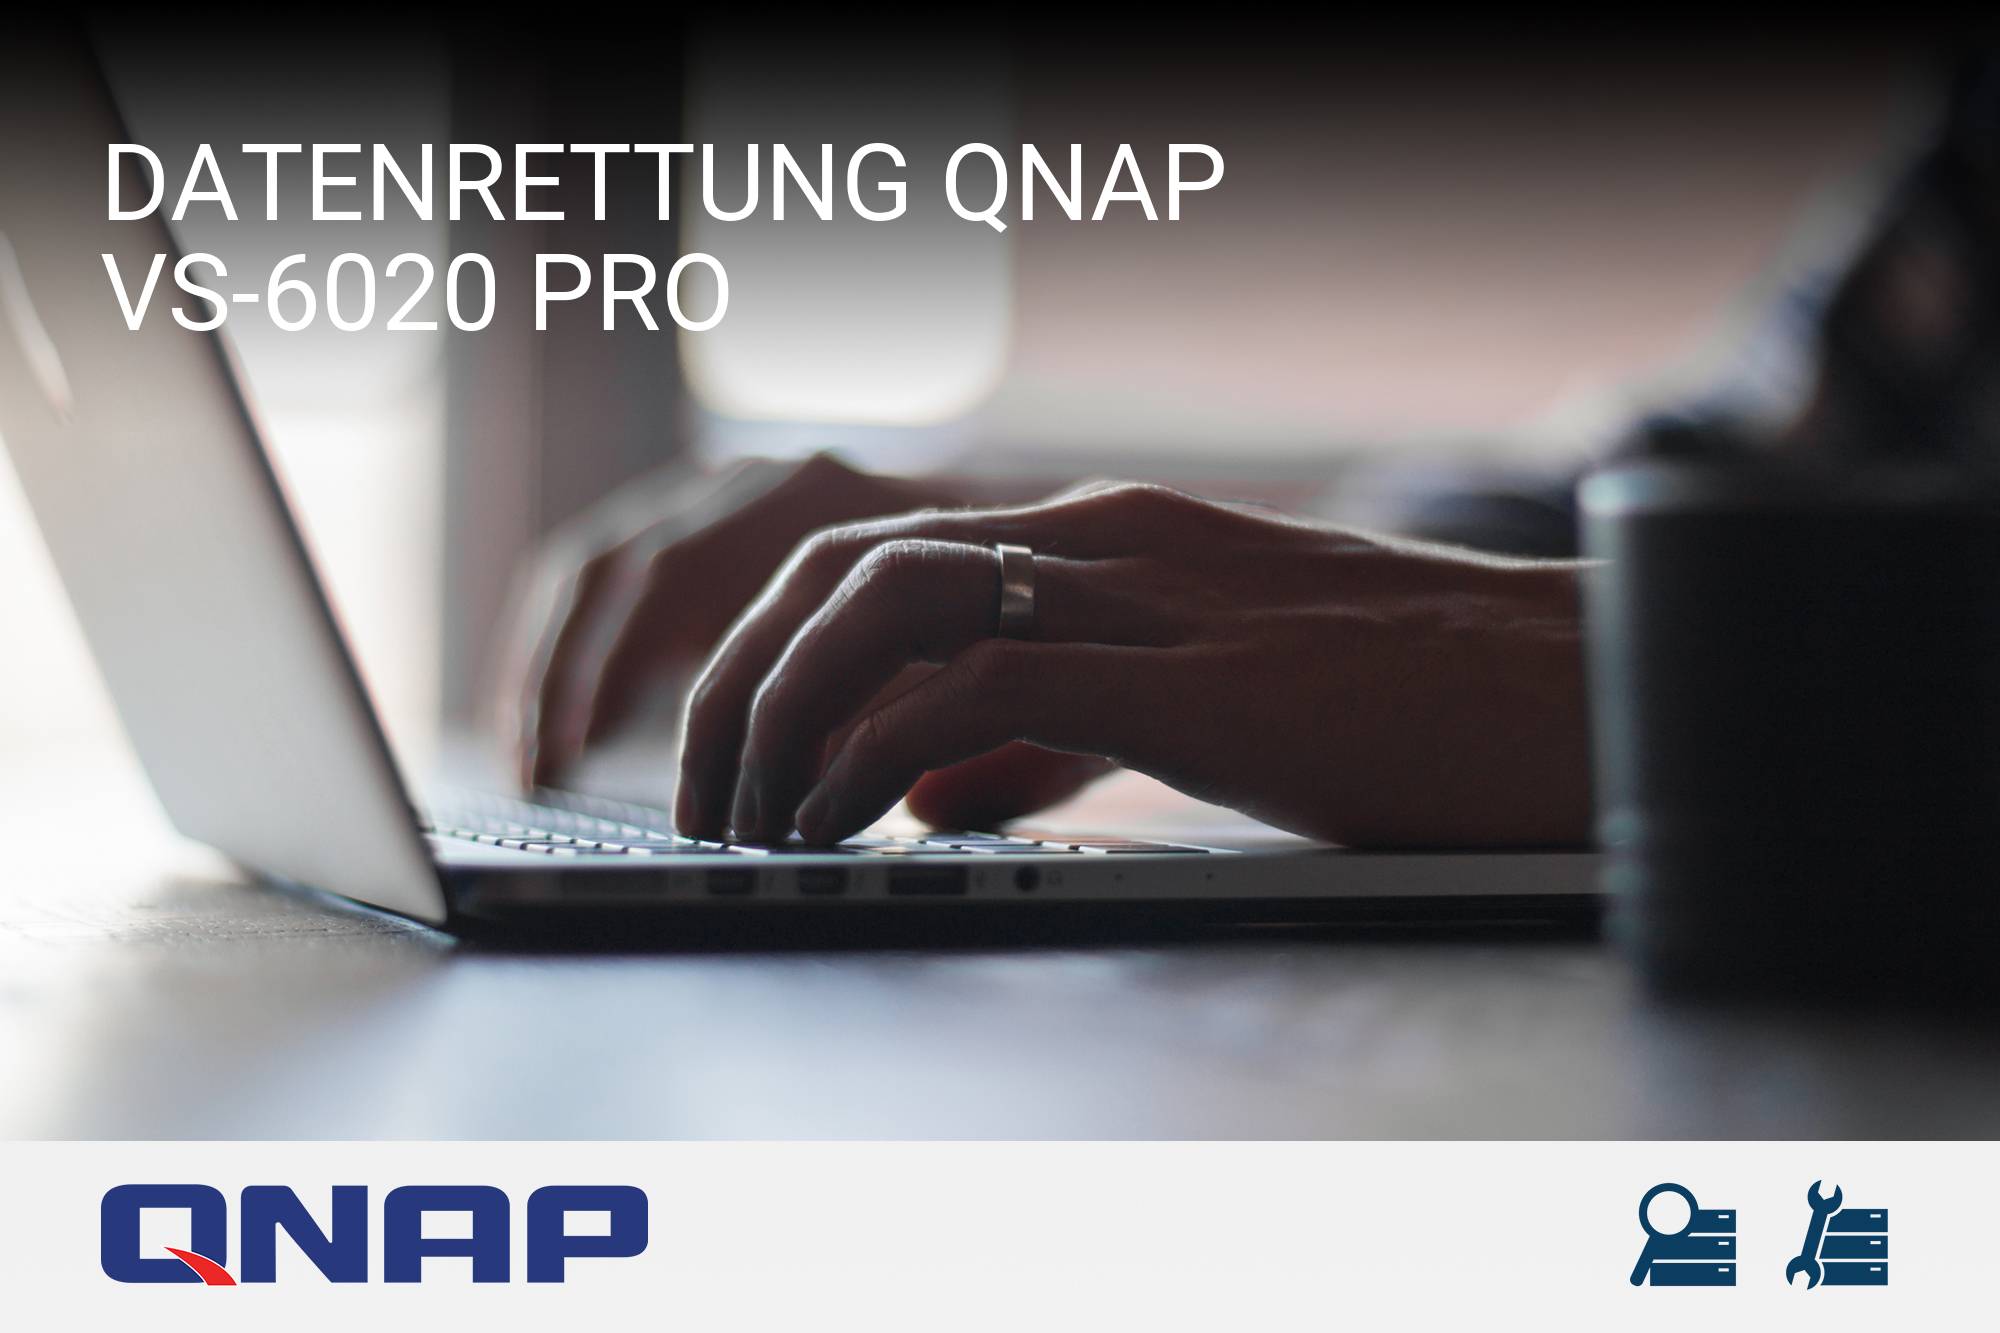 QNAP VS-6020 Pro